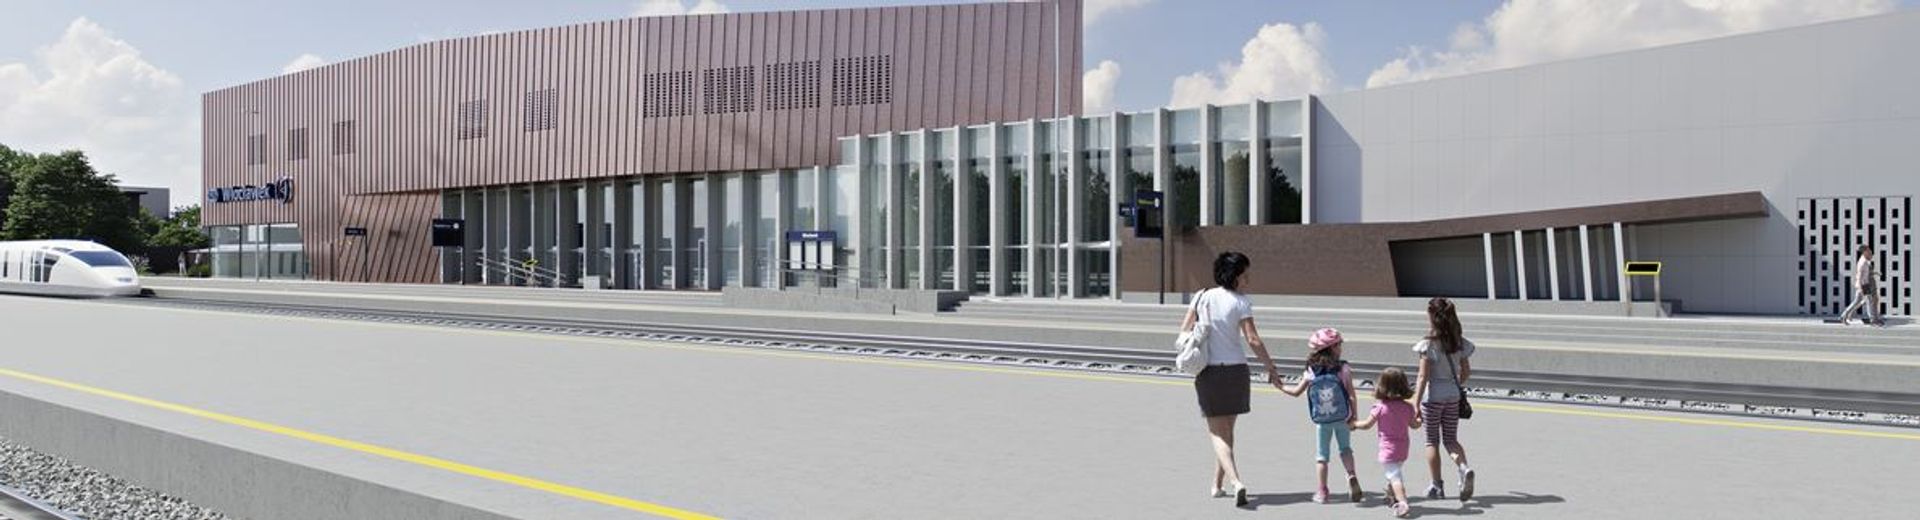 Budowa nowego dworca kolejowego we Włocławku na finiszu